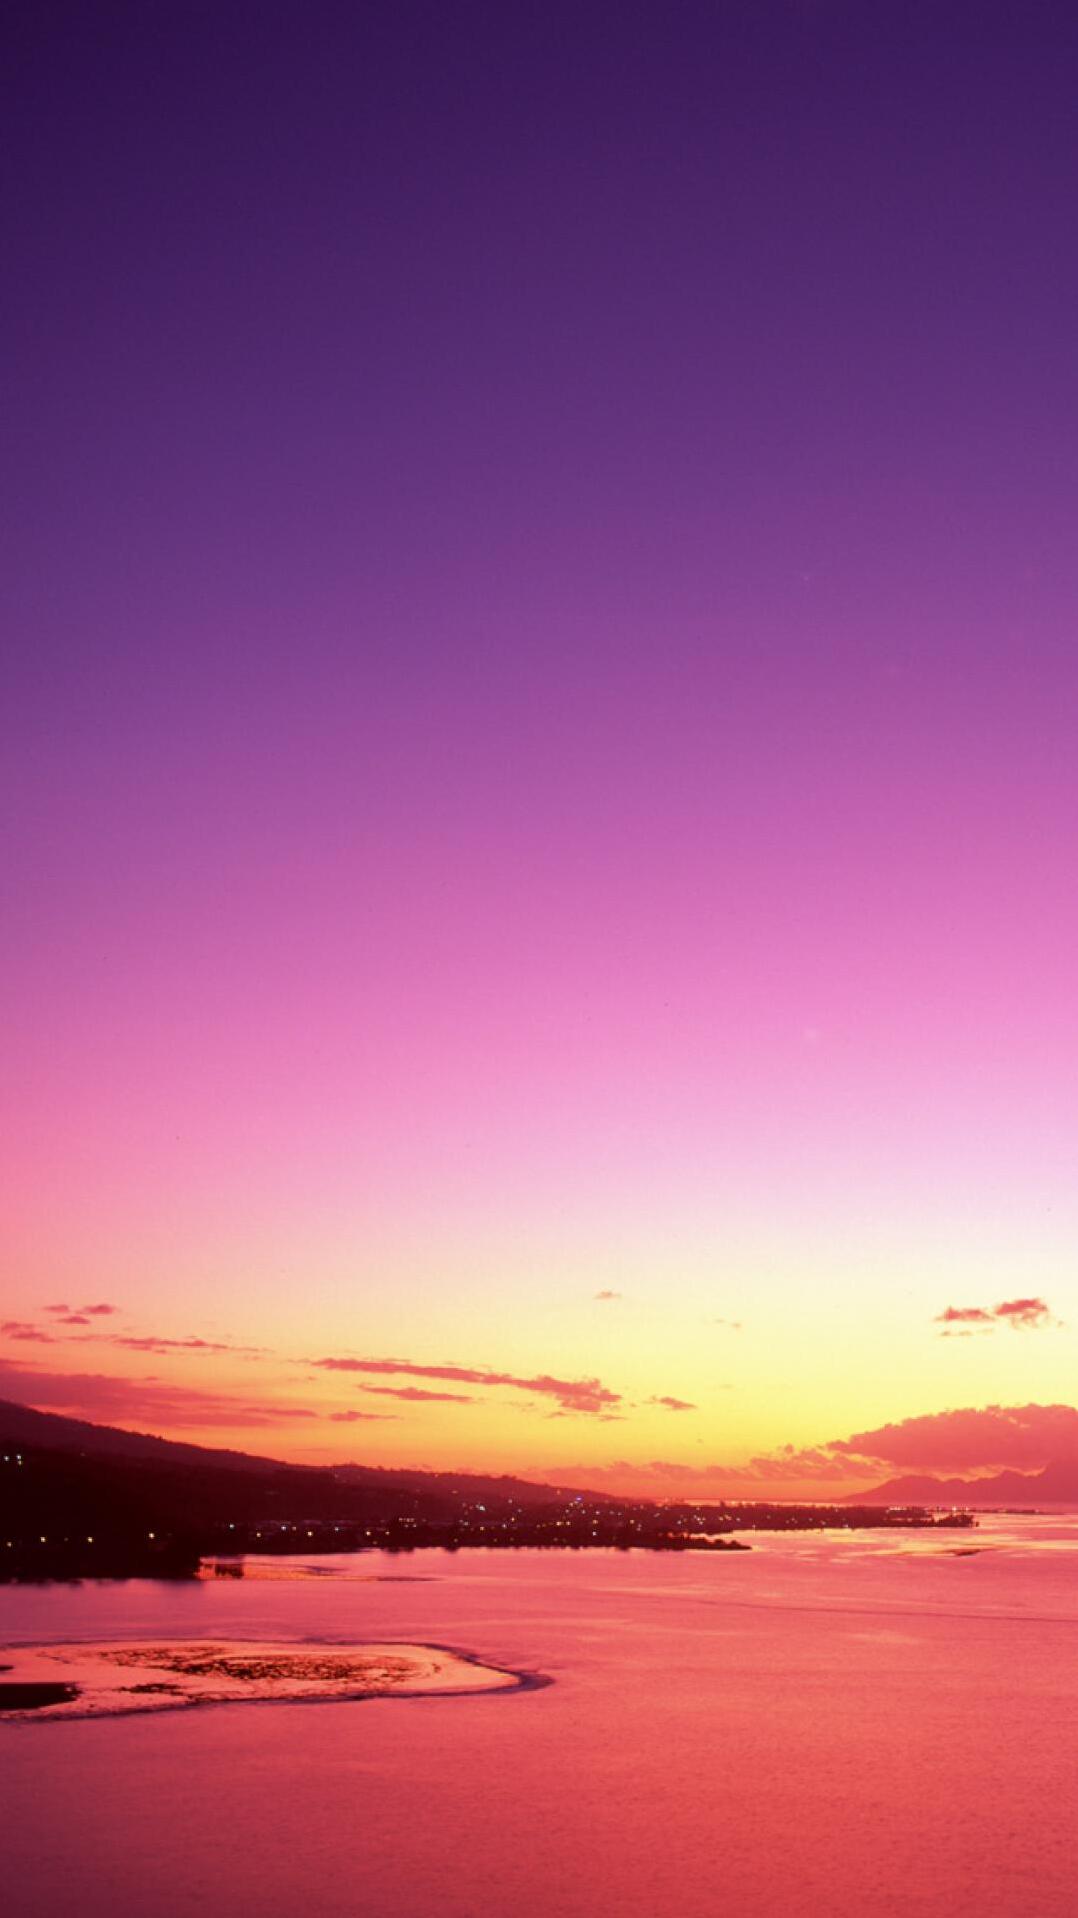 послесвечение, закат, горизонт, розовый, пурпур